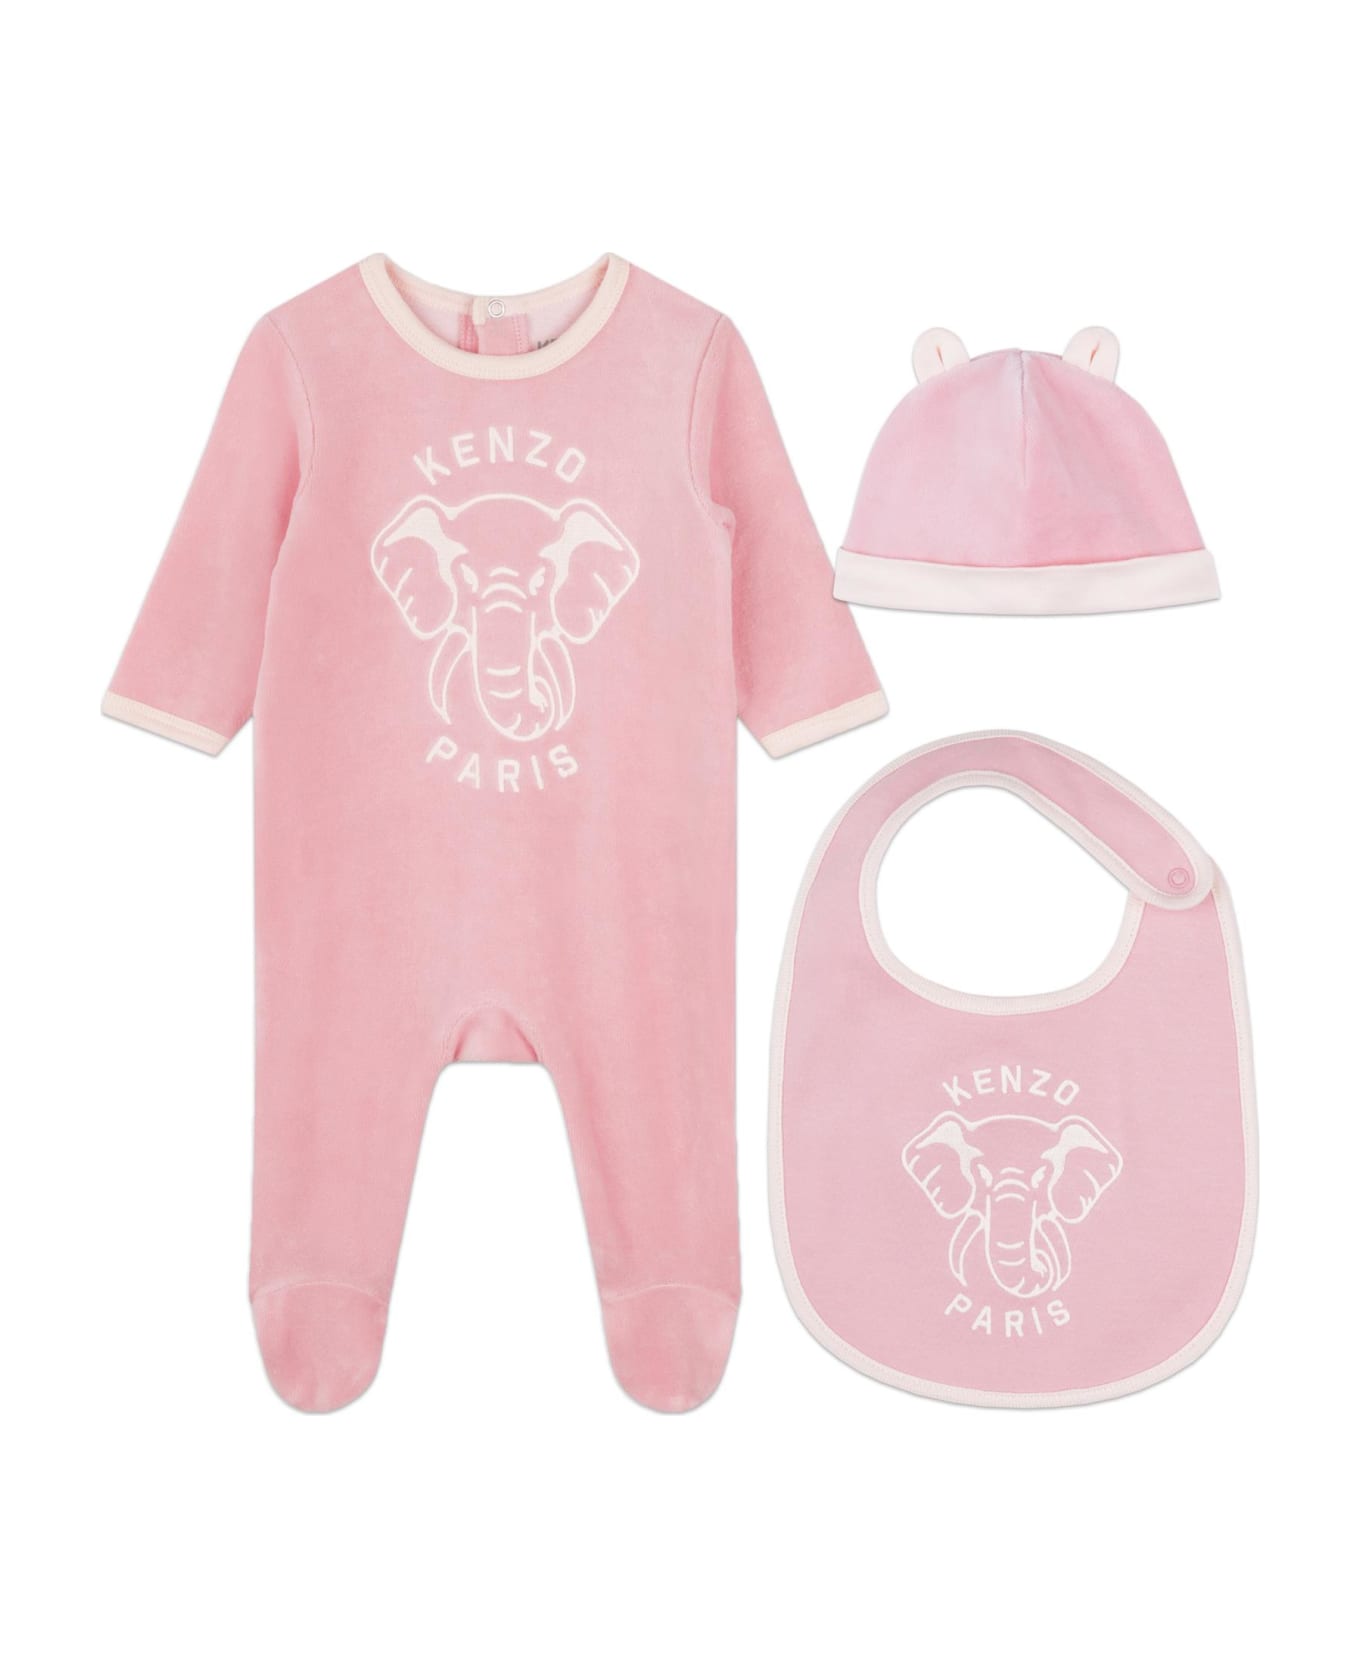 Kenzo Kids Set Tutina Con Stampa - Pink